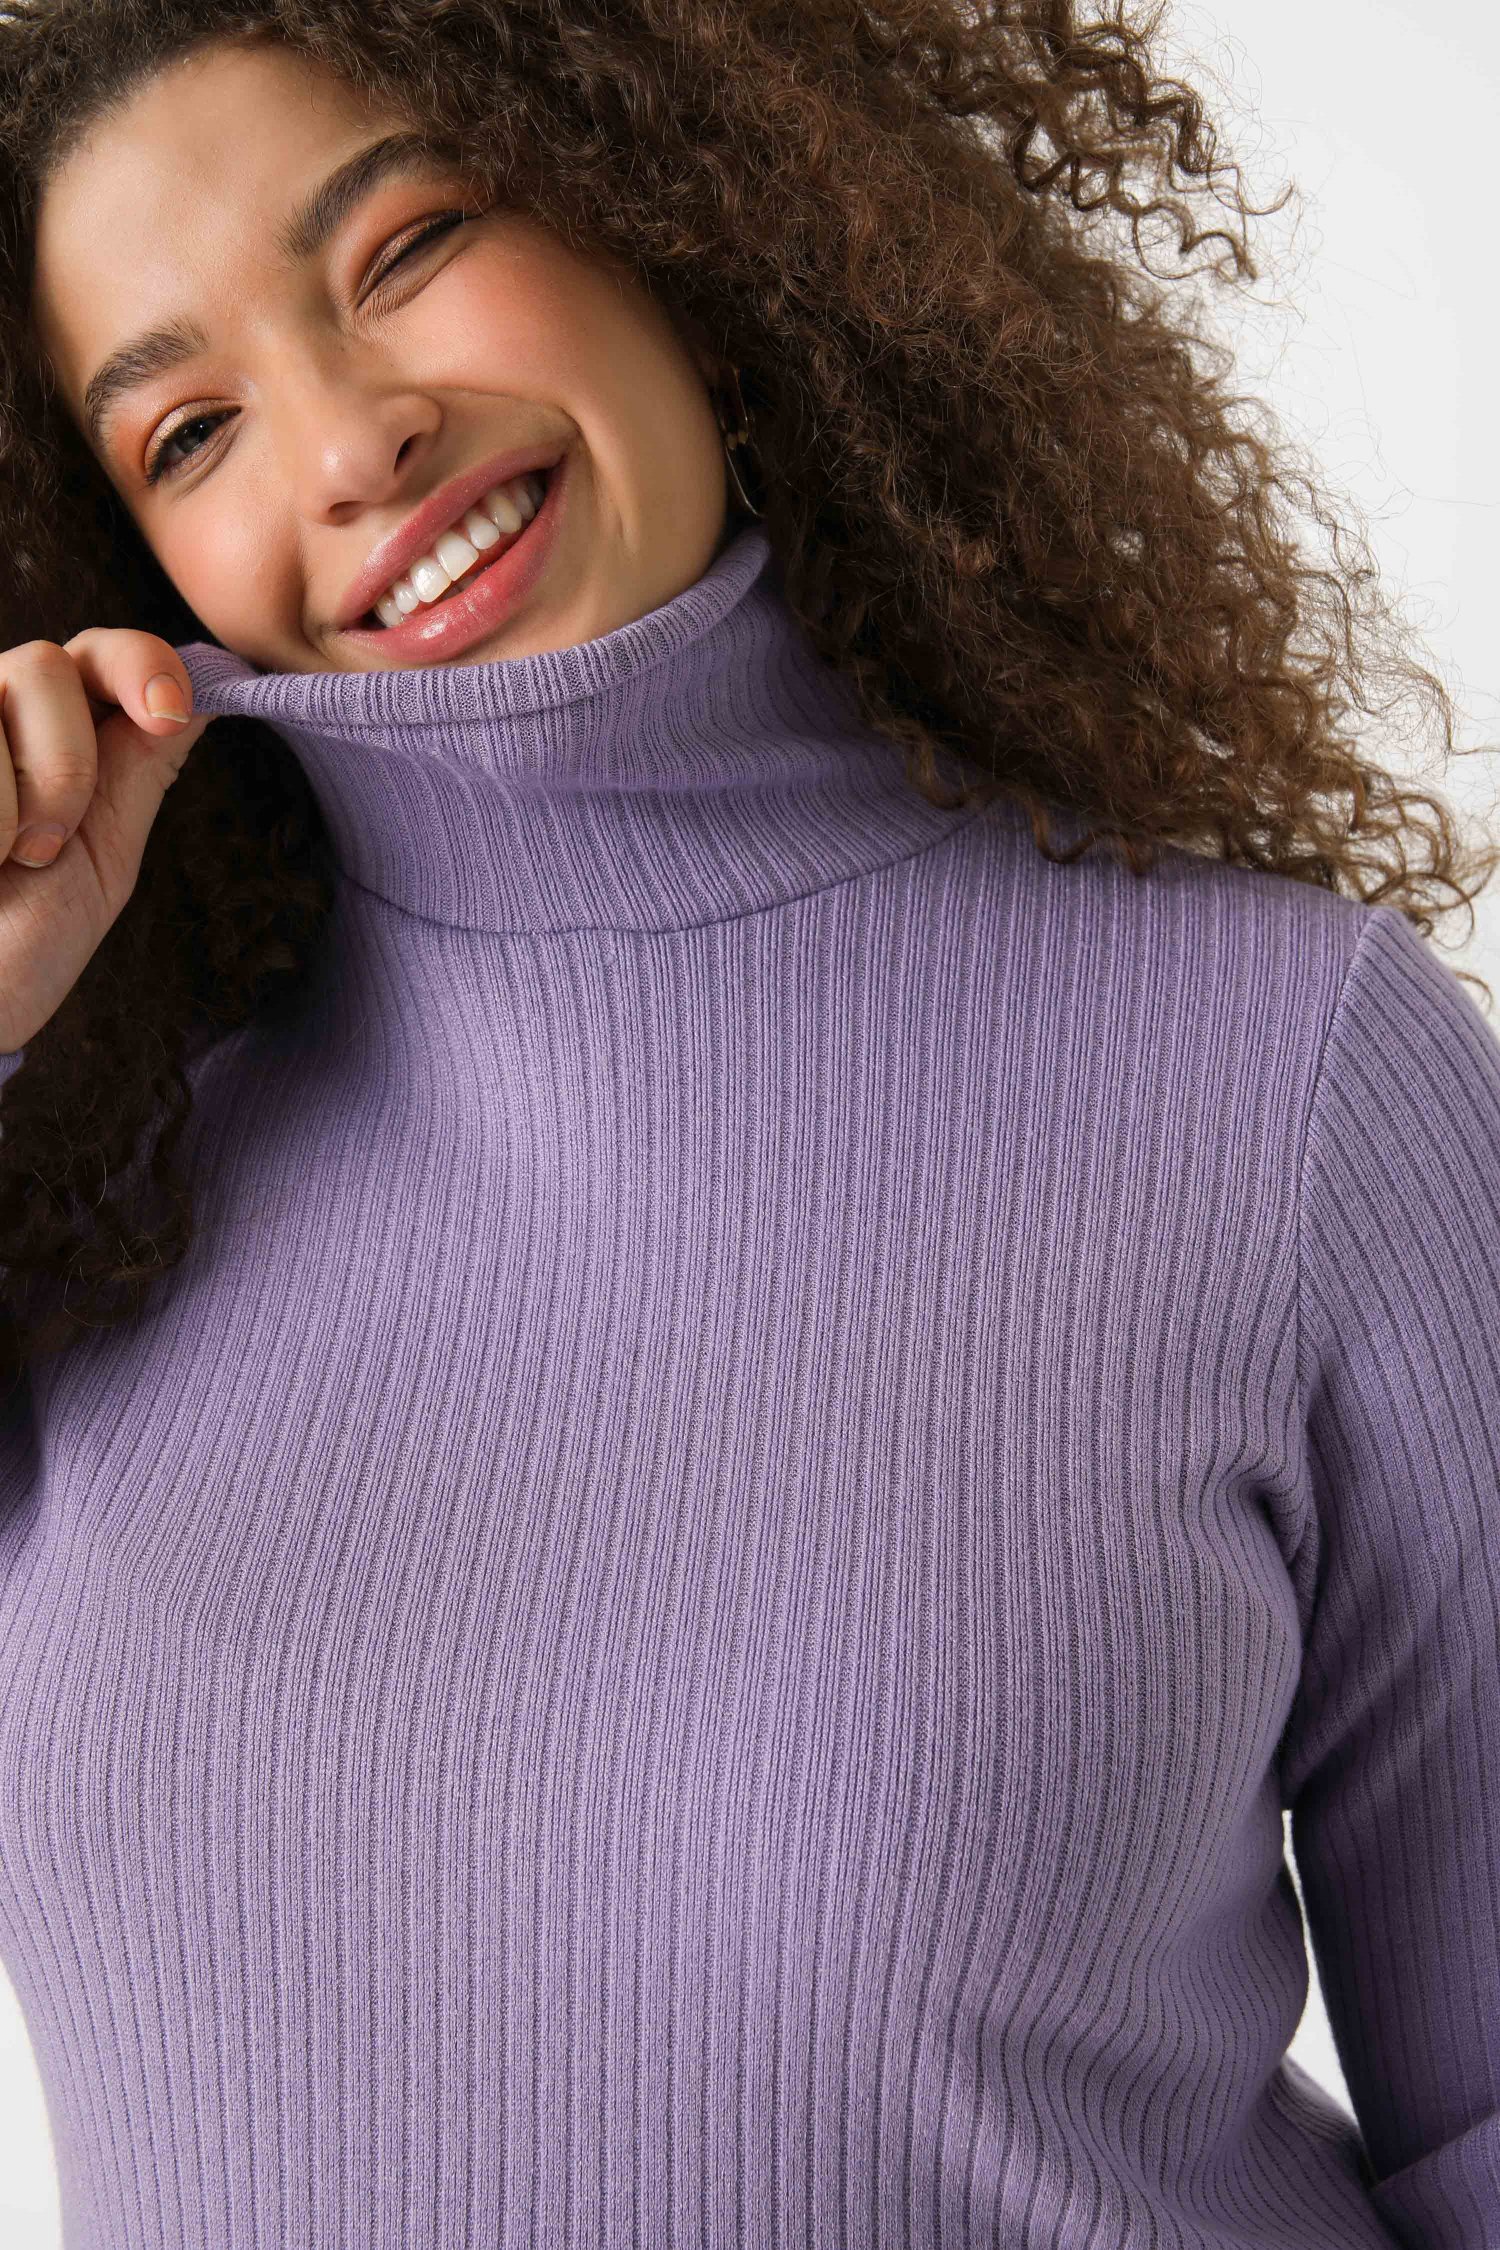 Fine-knit turtleneck sweater